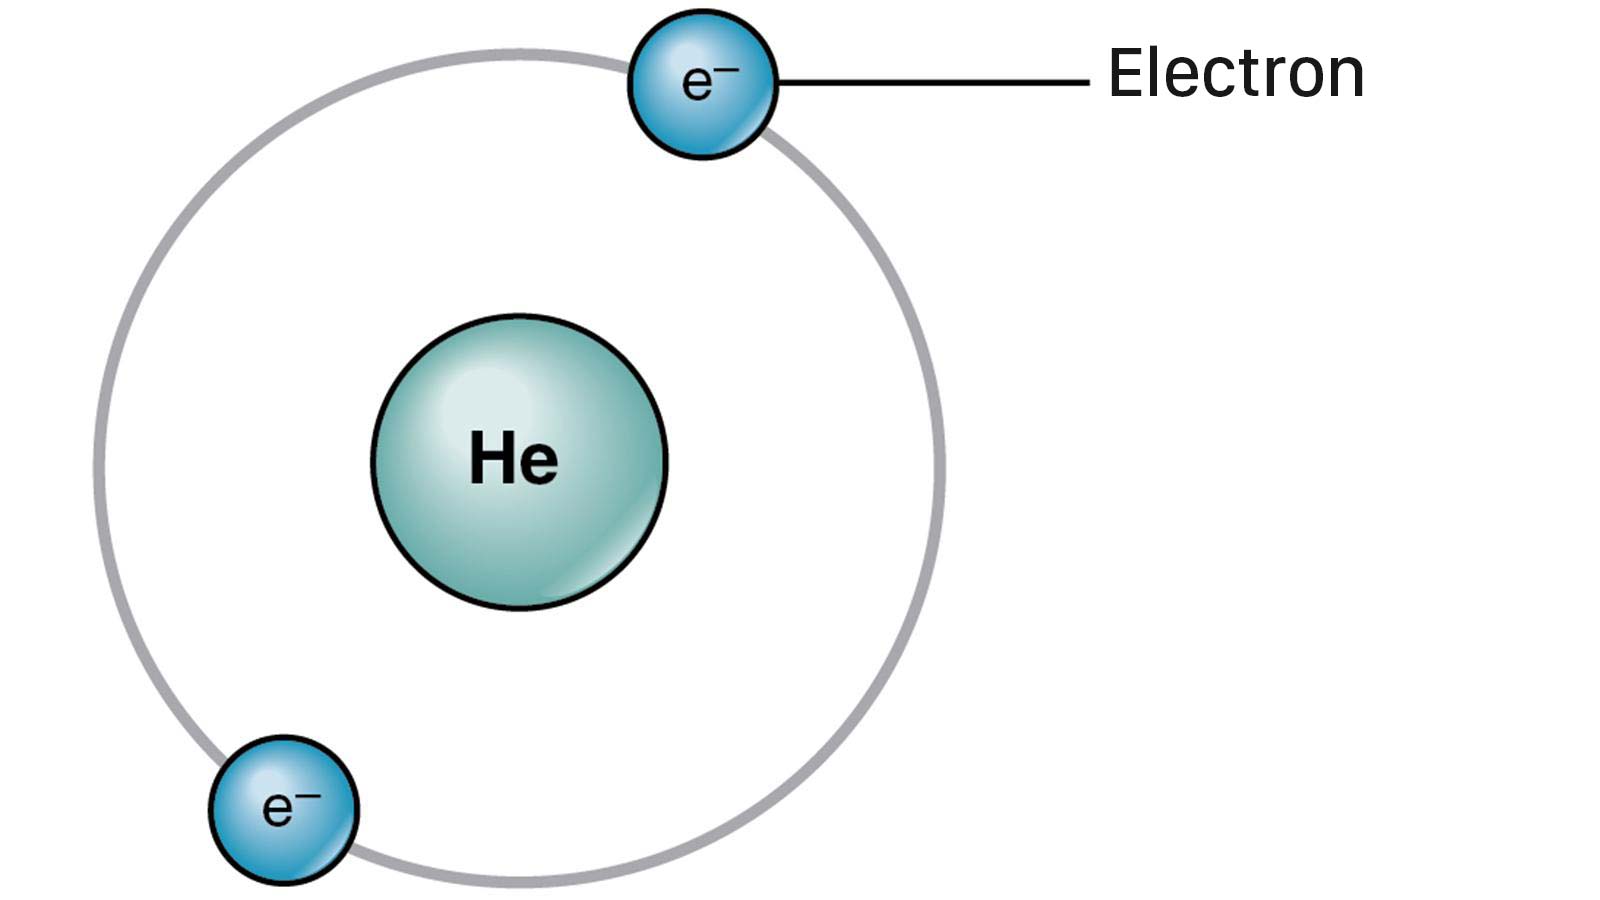 Hóa 10 Bài 4  Cánh diều Mô hình nguyên tử và orbital nguyên tử  Giải  Hóa học 10